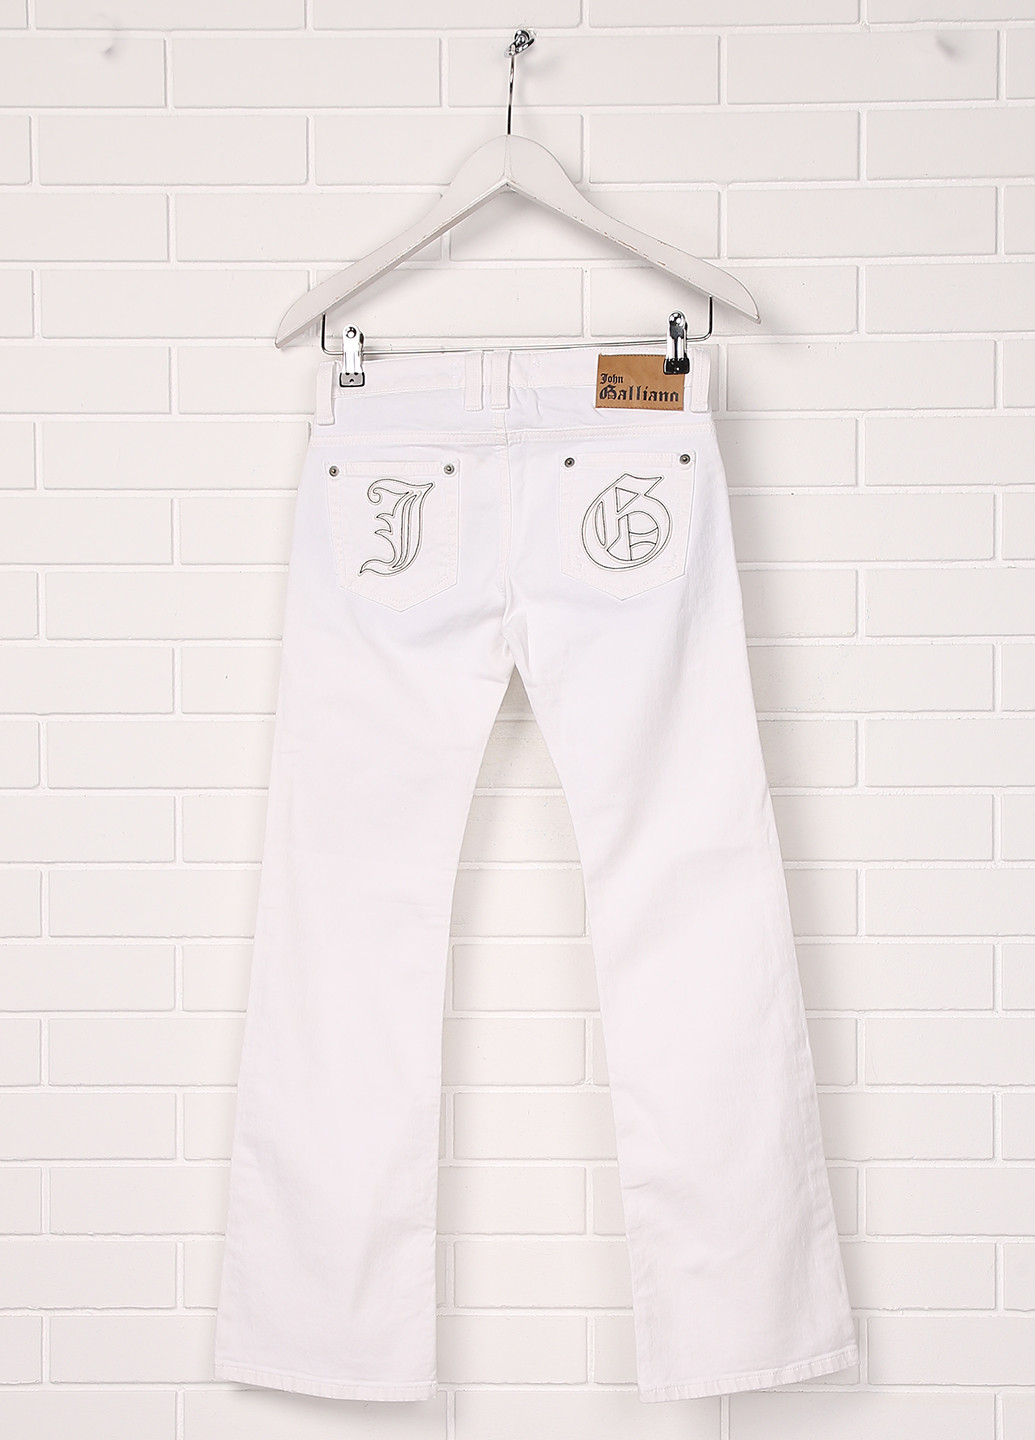 Белые летние со средней талией джинсы John Galliano